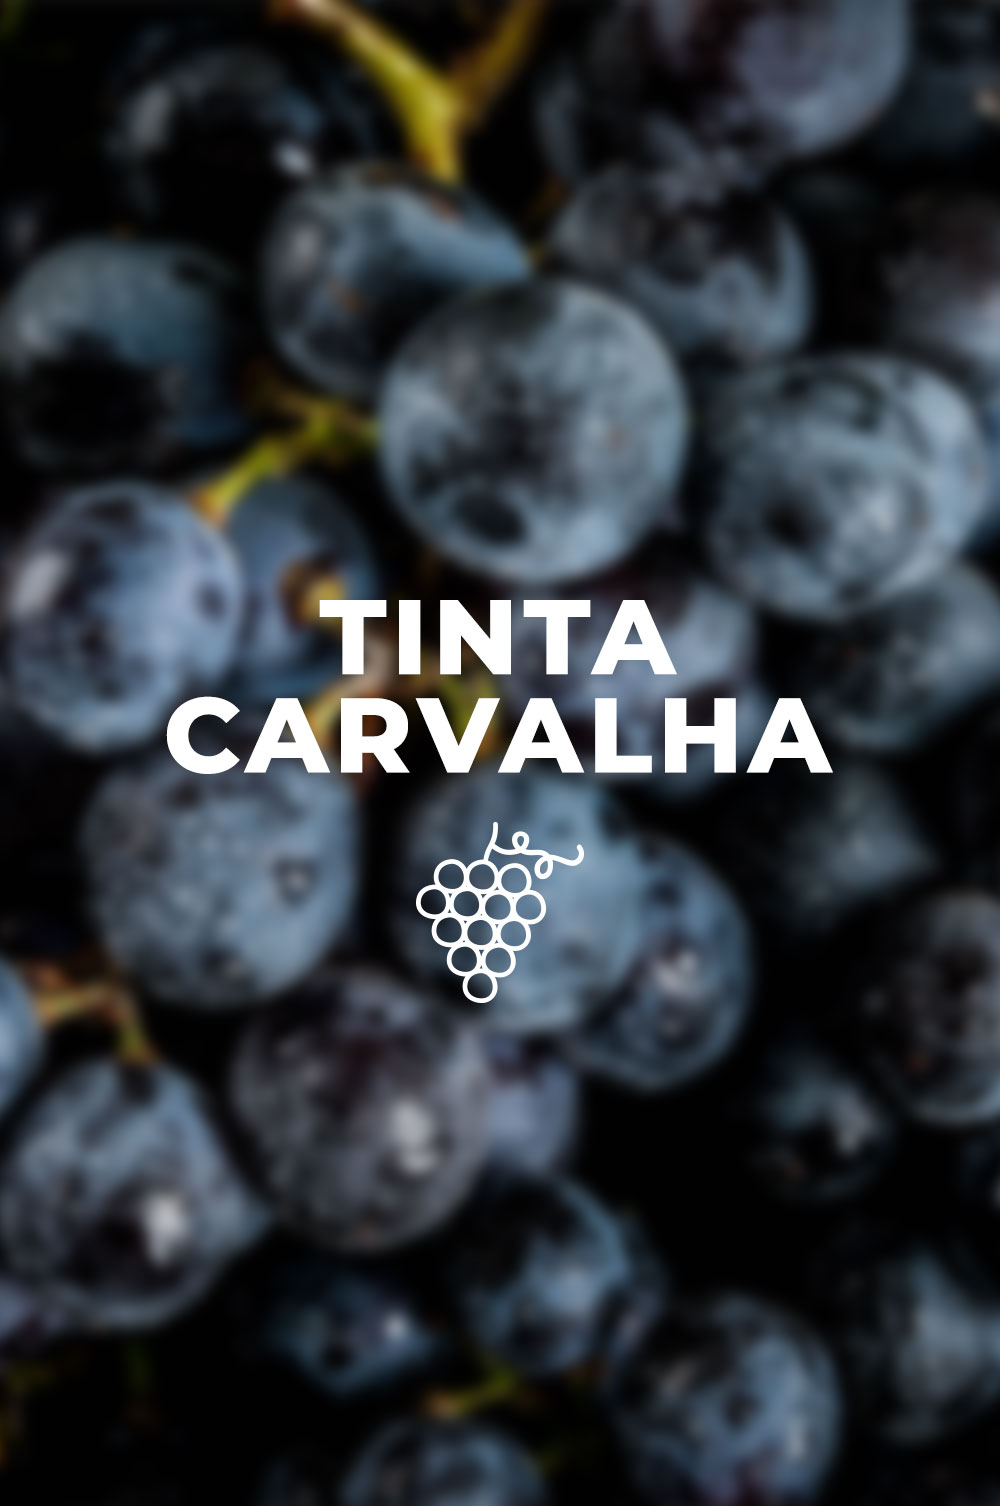 Um brinde à Tinta Carvalha, com um vinho de António Maçanita